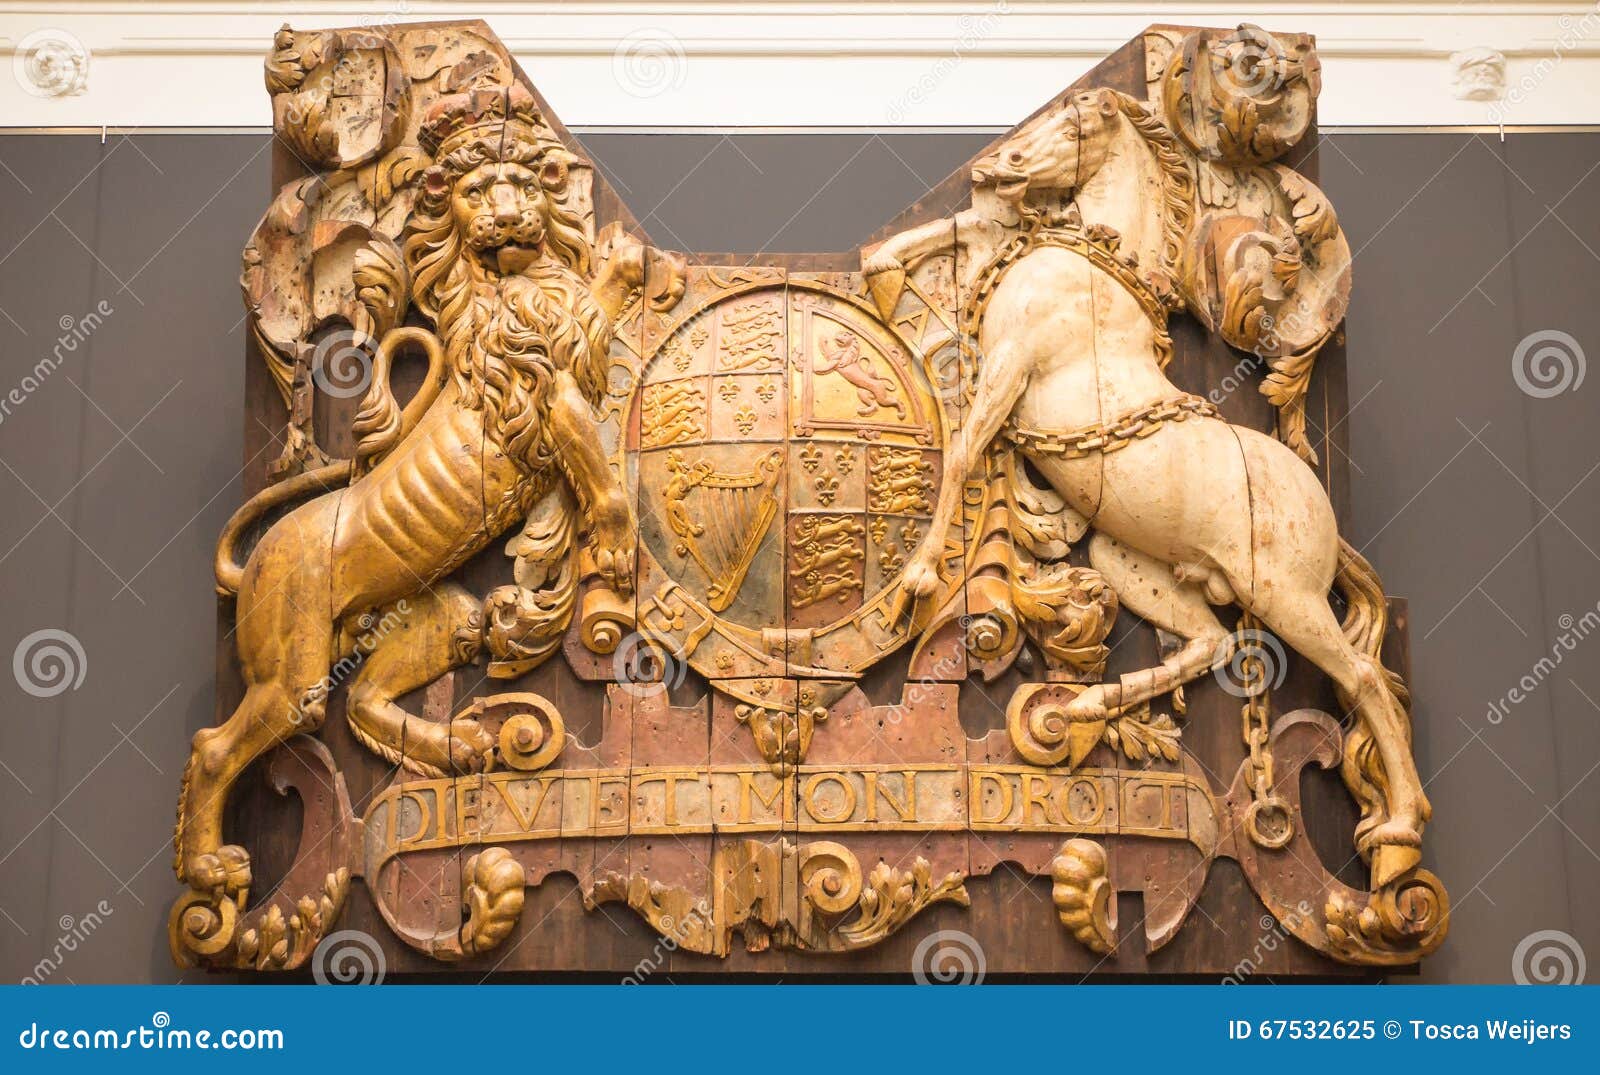 Wooden Shield Dieu Et Mon Droit Stock Image Image Of Monarch Lion